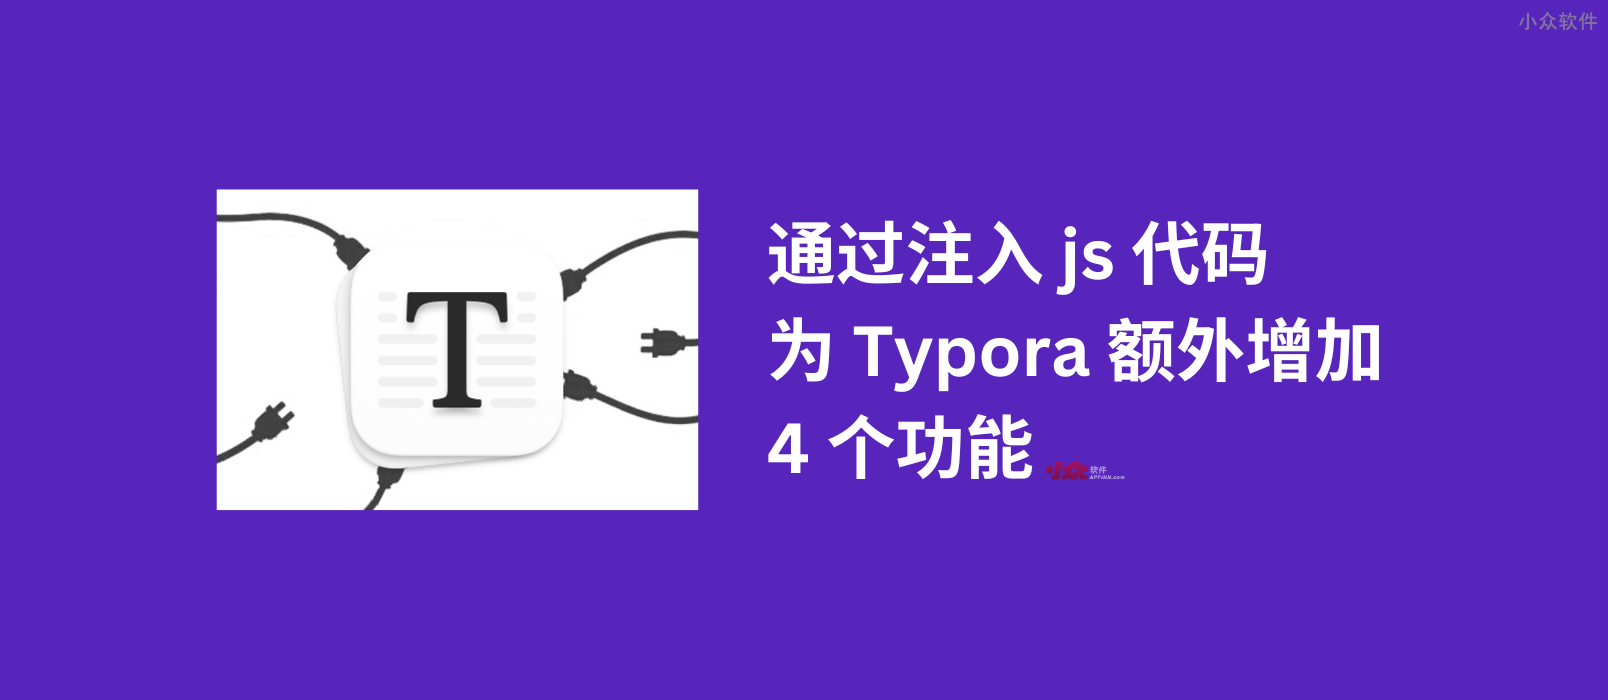 通过注入 js 代码，为 Typora 额外增加 4 个功能